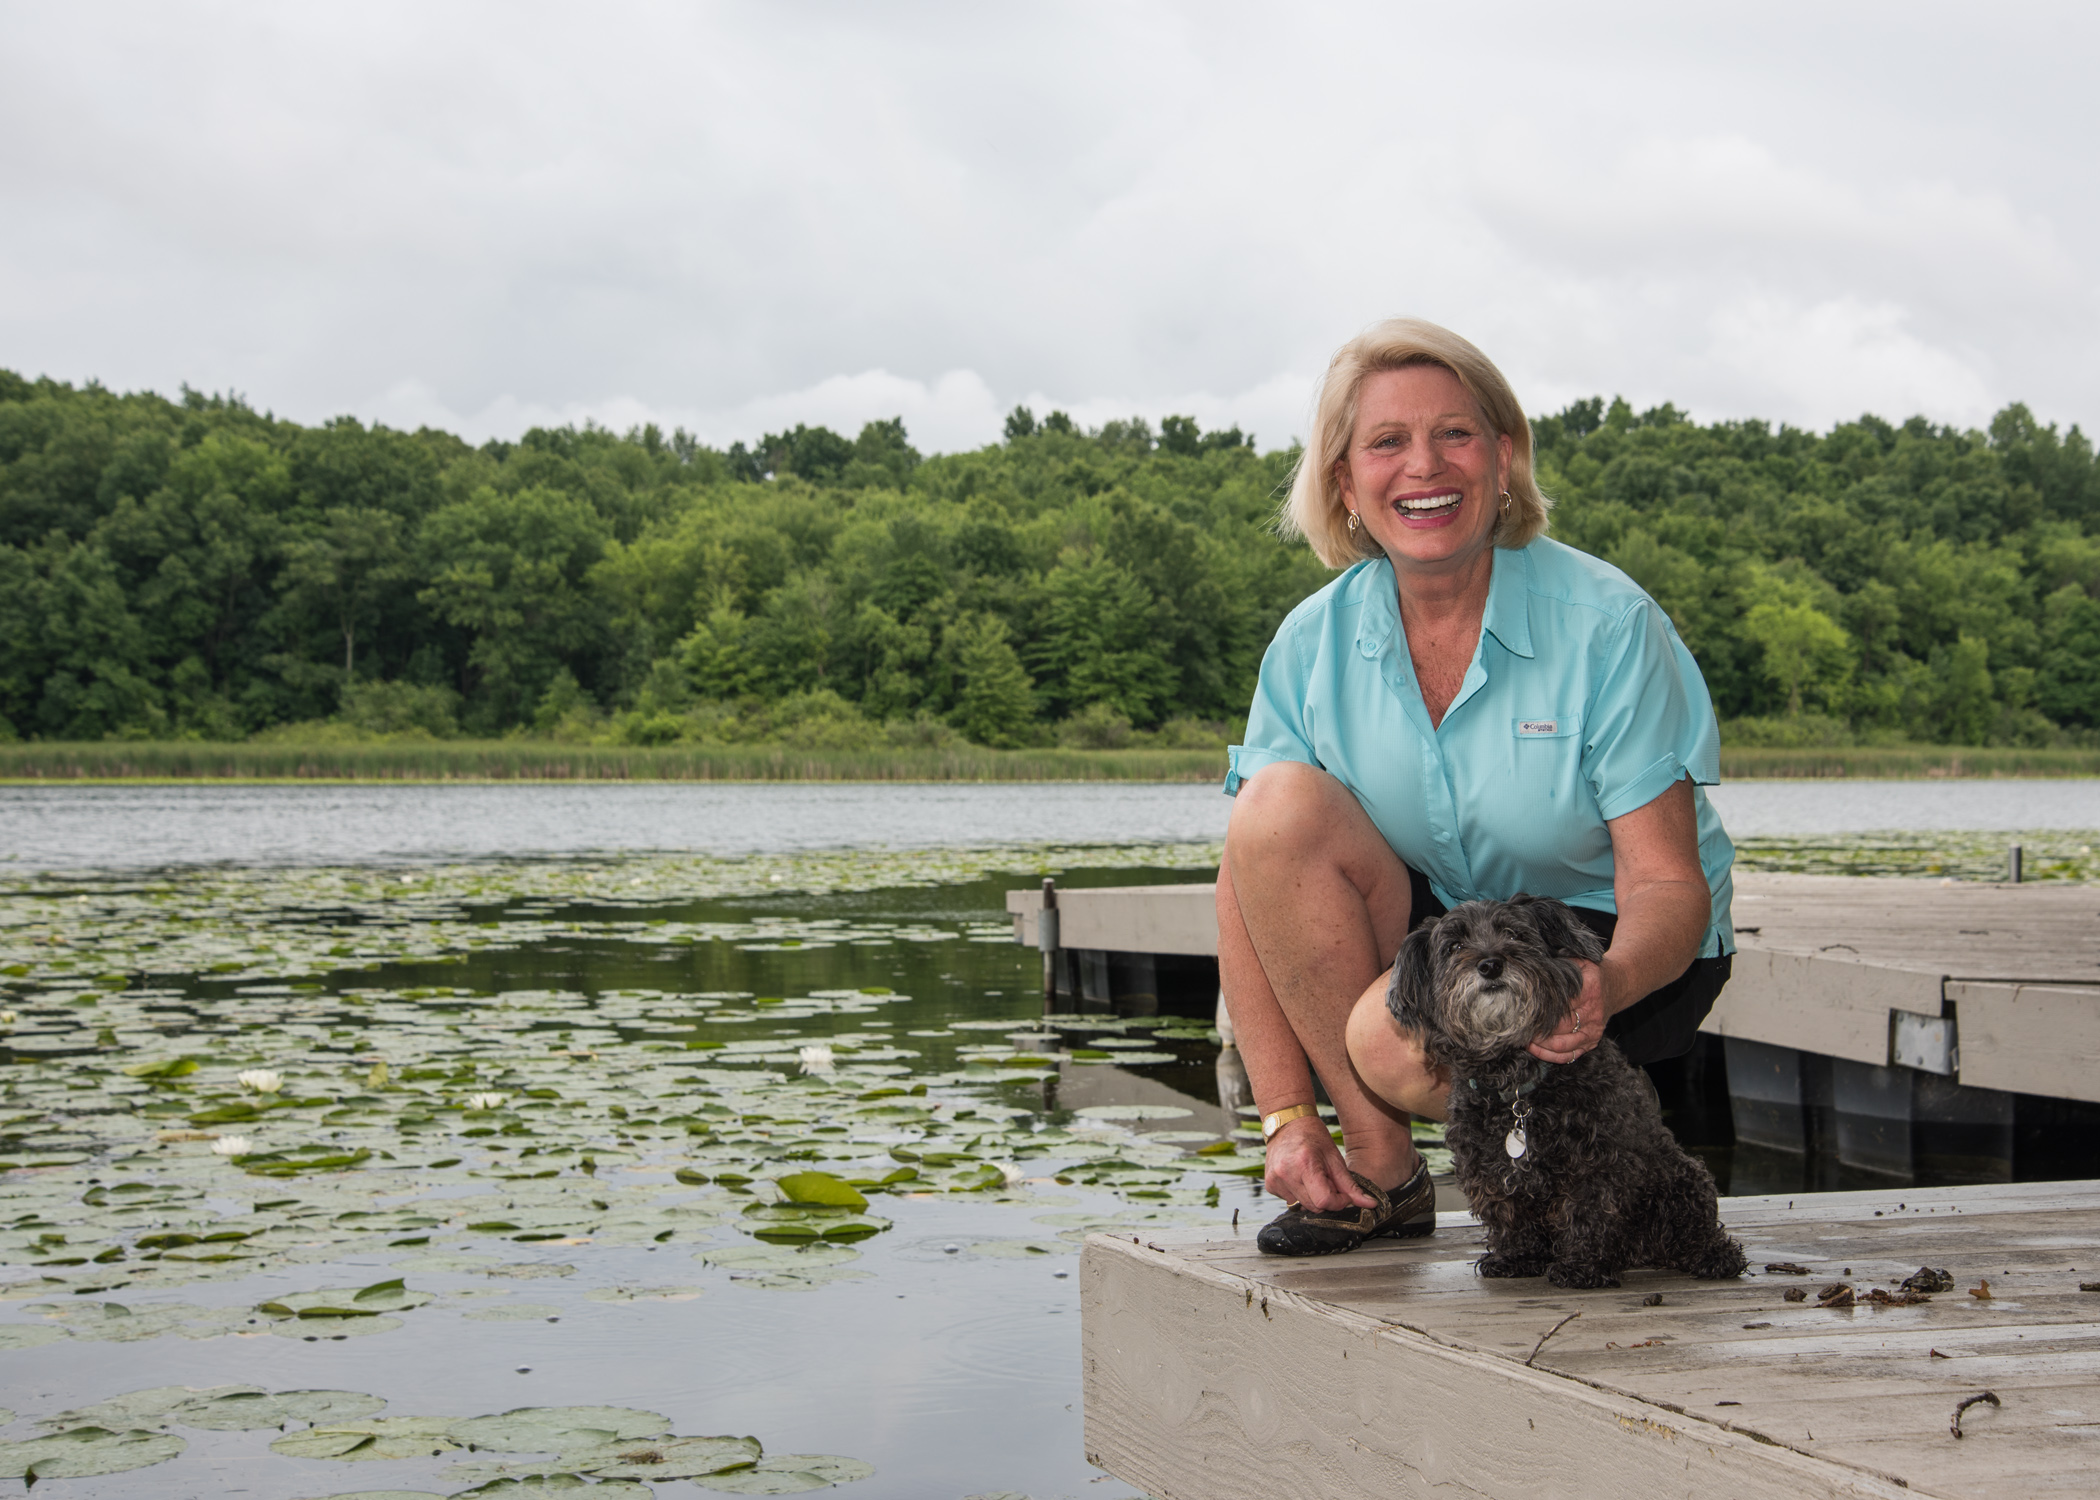 Ruth at lake with dog 2